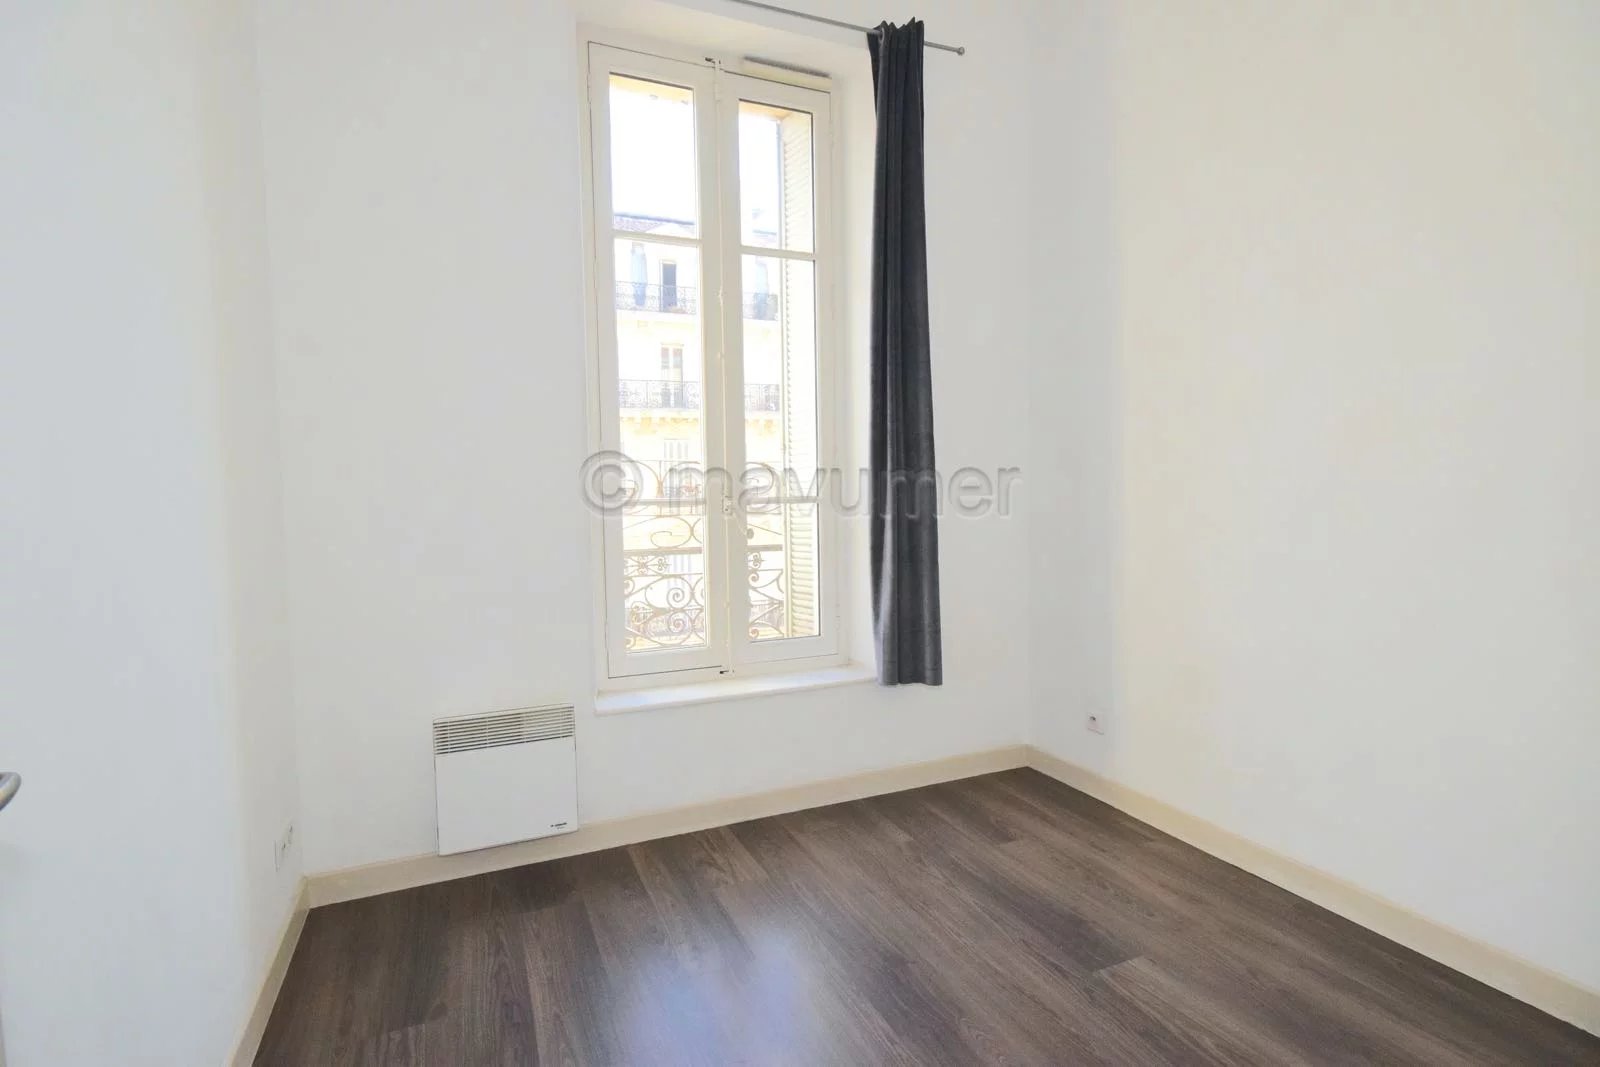 Sale Apartment - Marseille 2ème La Joliette